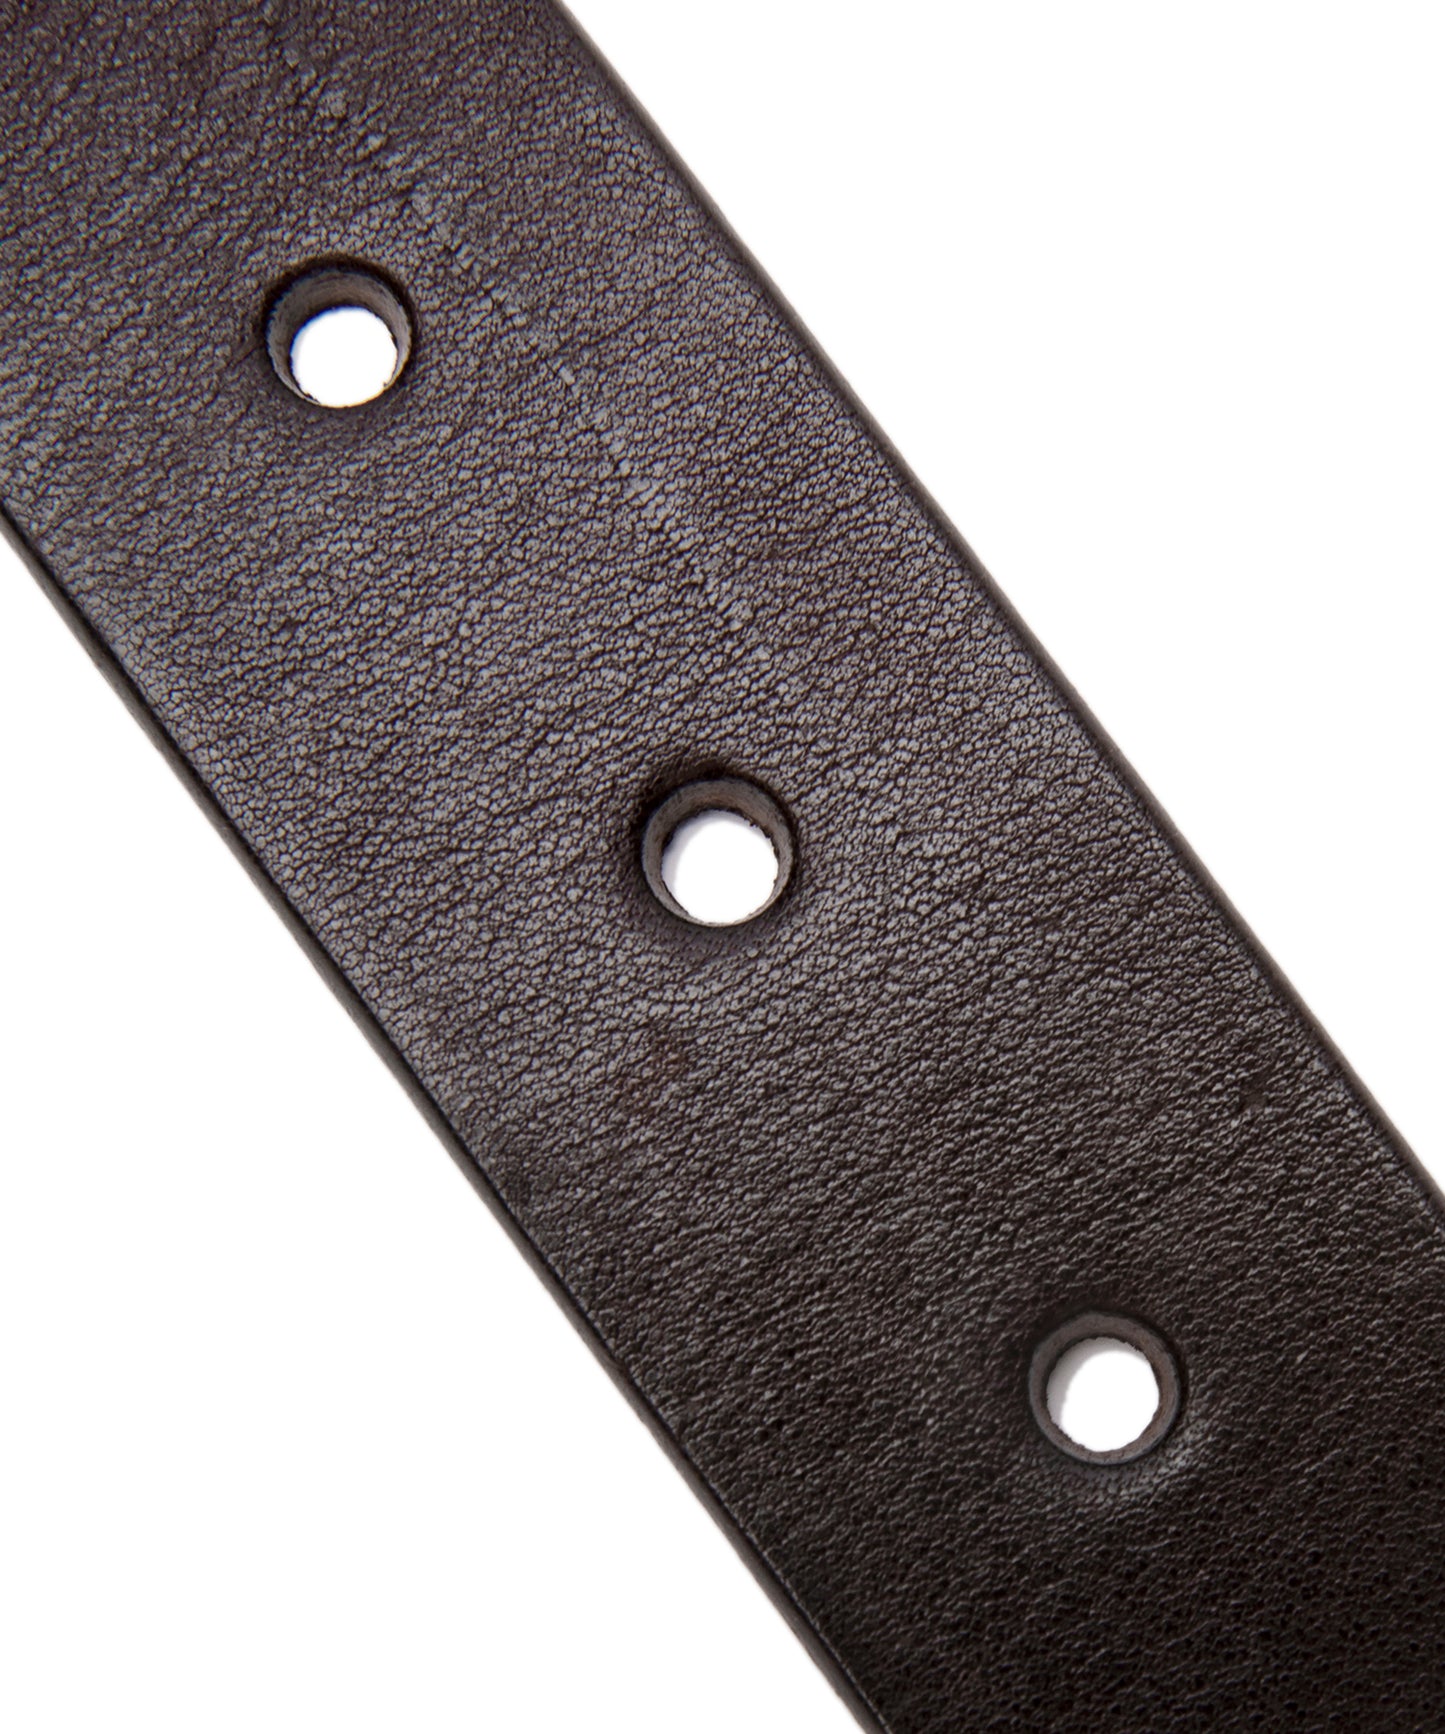 Scquare Buckled Leather Belt